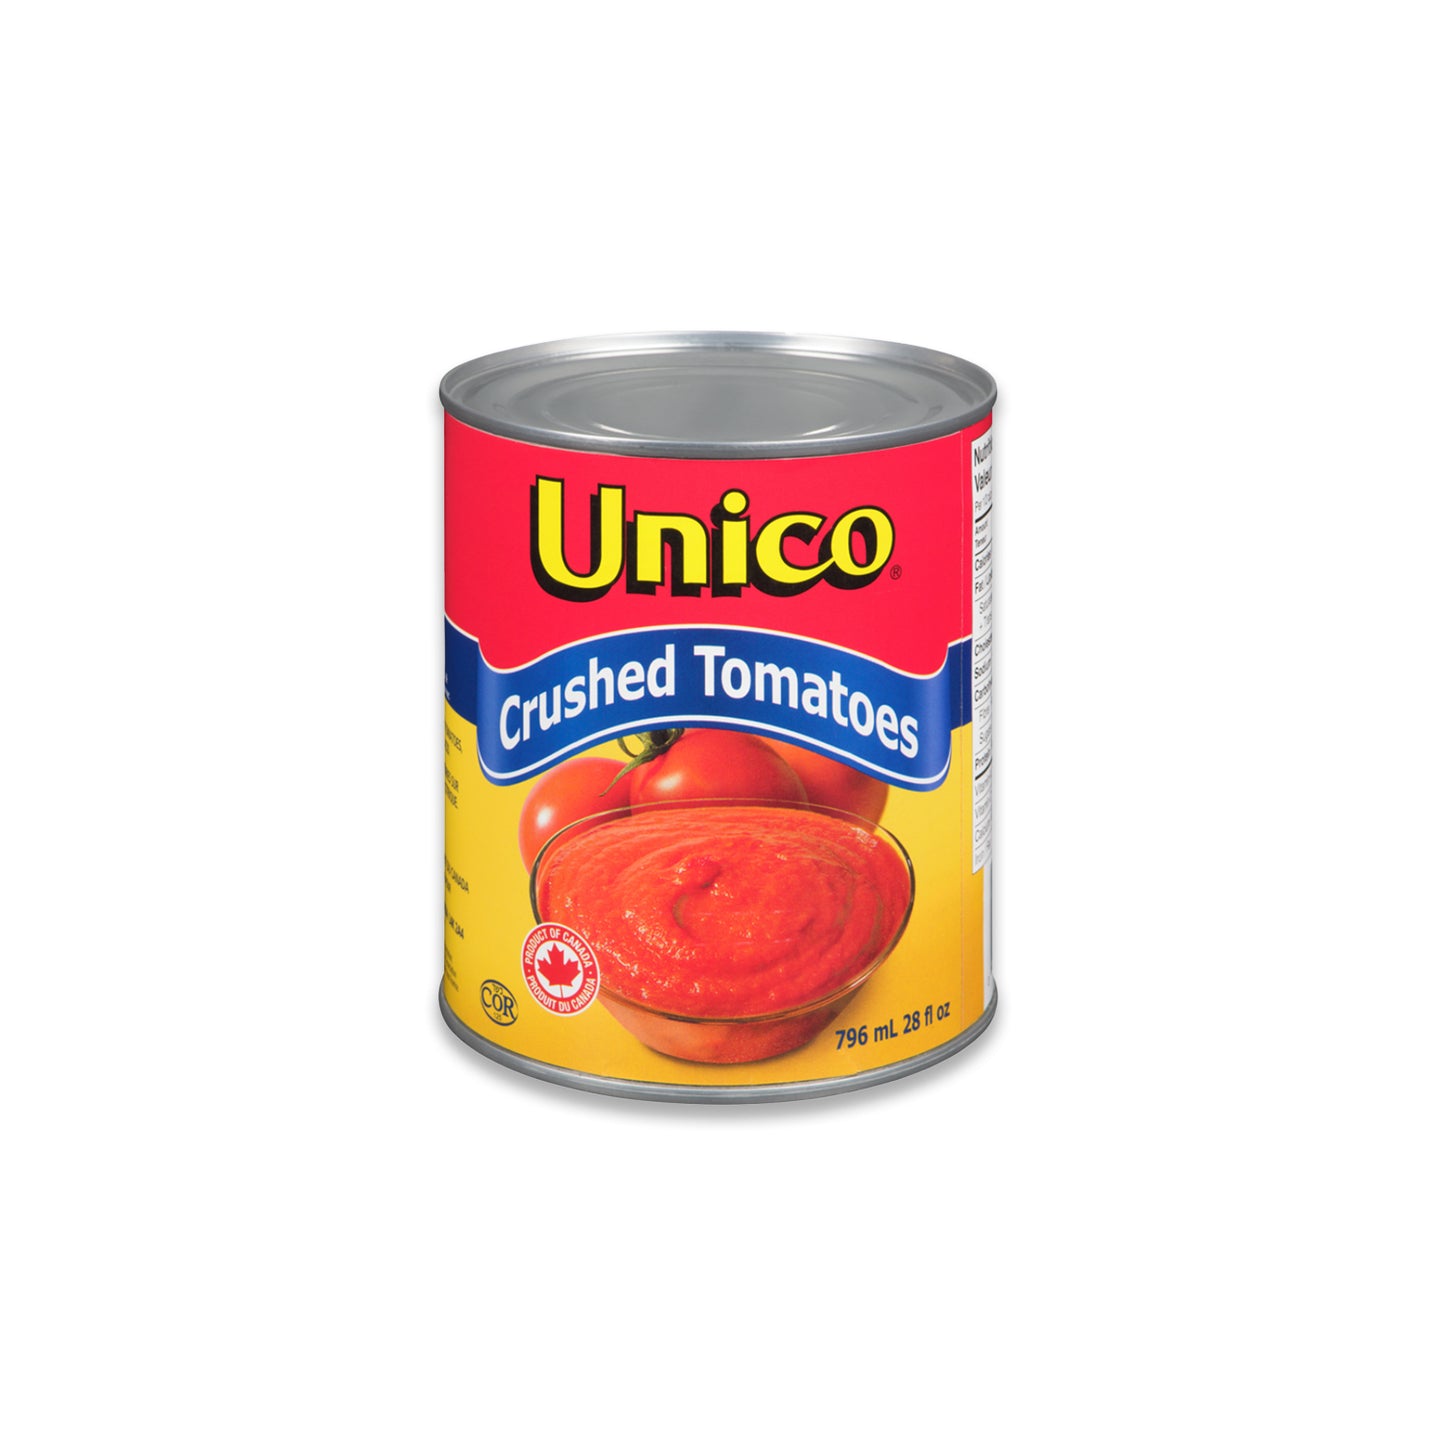 Tomatoes - Unico (Crushed)